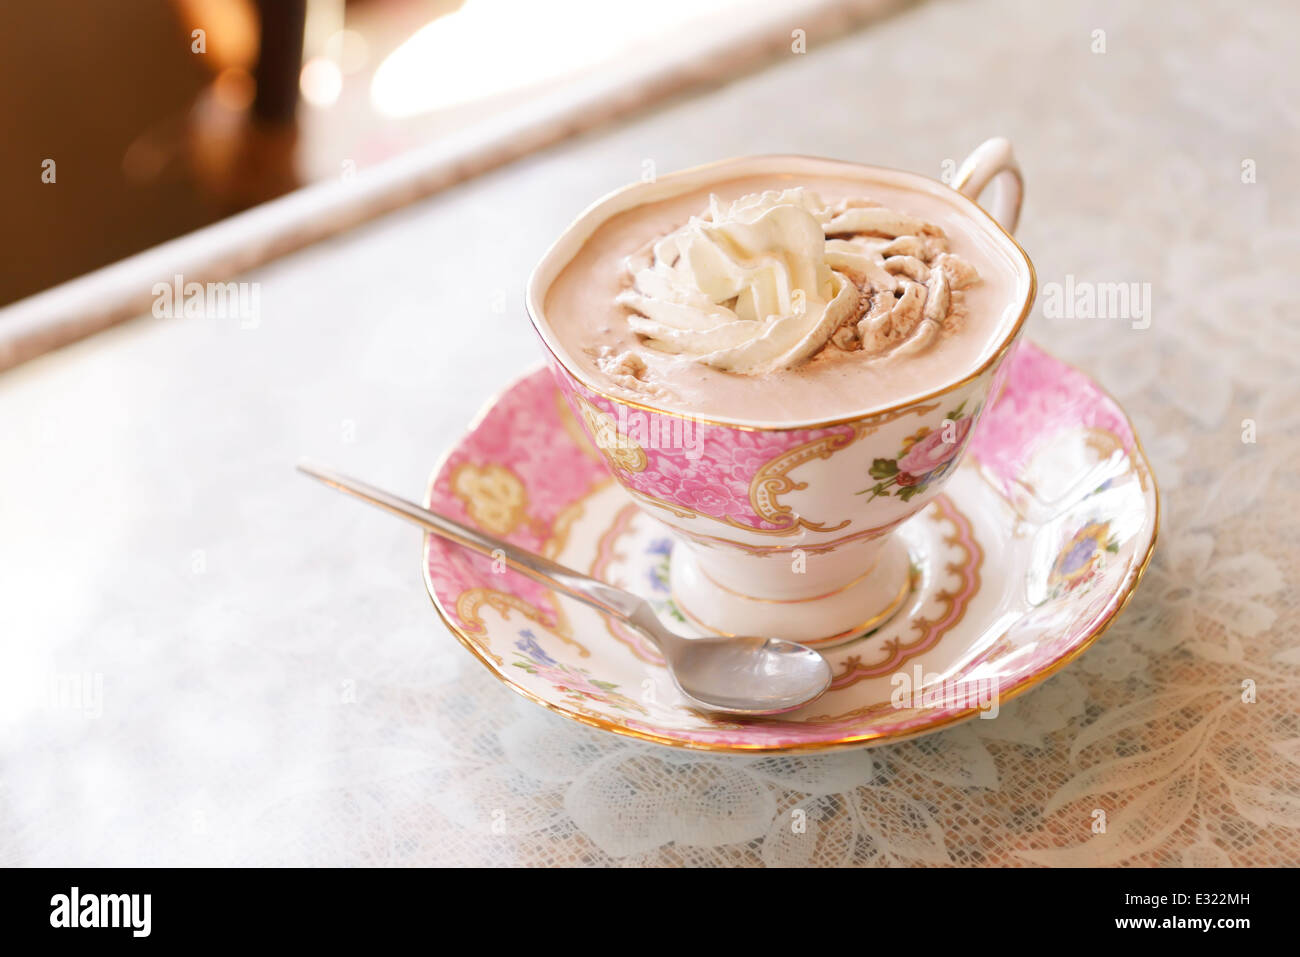 Tasses tasse de chocolat chaud avec de la crème sur une table Banque D'Images